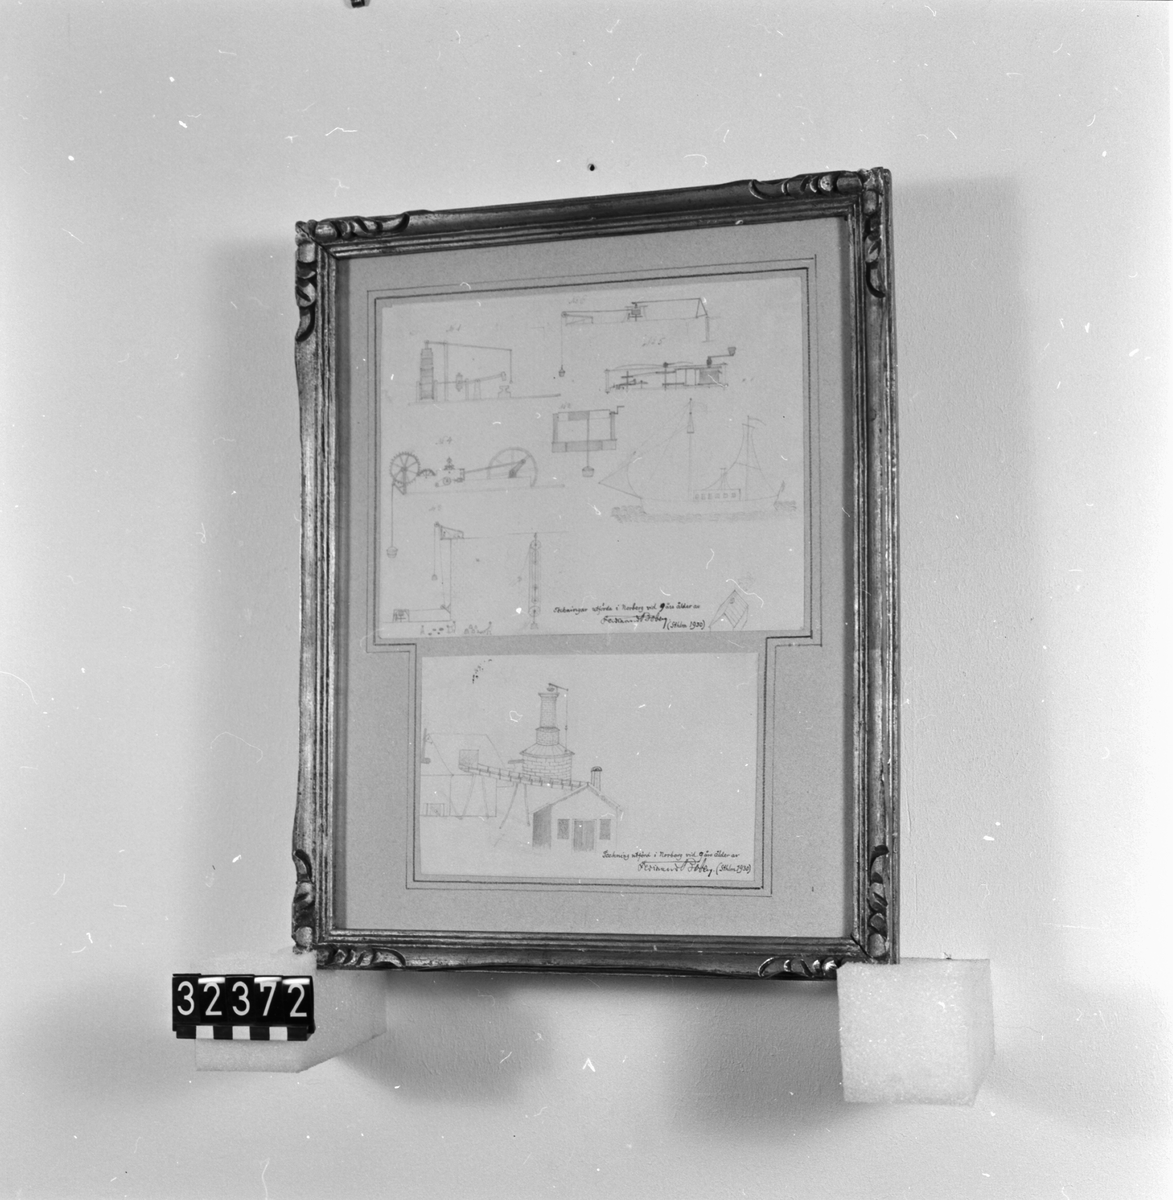 Två blyertsteckningar inom grå passepertout. Påskrift med bläck på teckningarna: "Teckningar (resp teckning) utförda i Norberg vid 9 års ålder av Ferdinand Boberg (namnteckning) (Sthlm 1930). Tjocklek: 35 mm. Glasad tavla med förgylld, snidad träram.